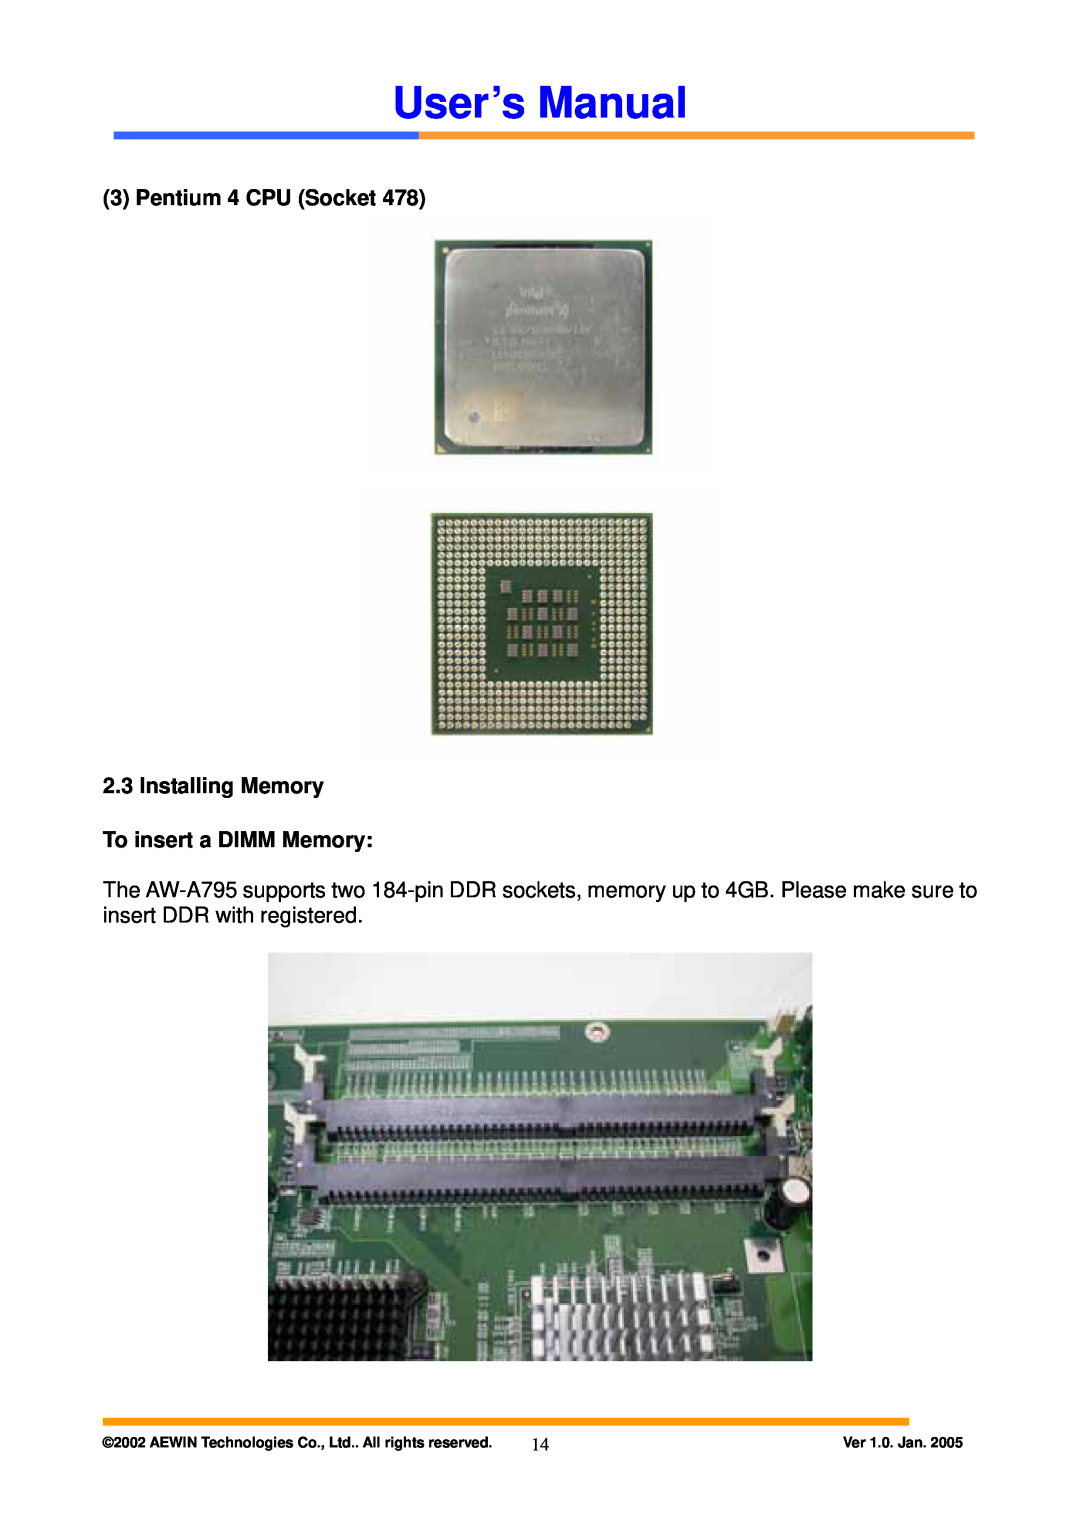 Intel AW-A795 user manual Pentium 4 CPU Socket 2.3 Installing Memory To insert a DIMM Memory, User’s Manual, Ver 1.0. Jan 